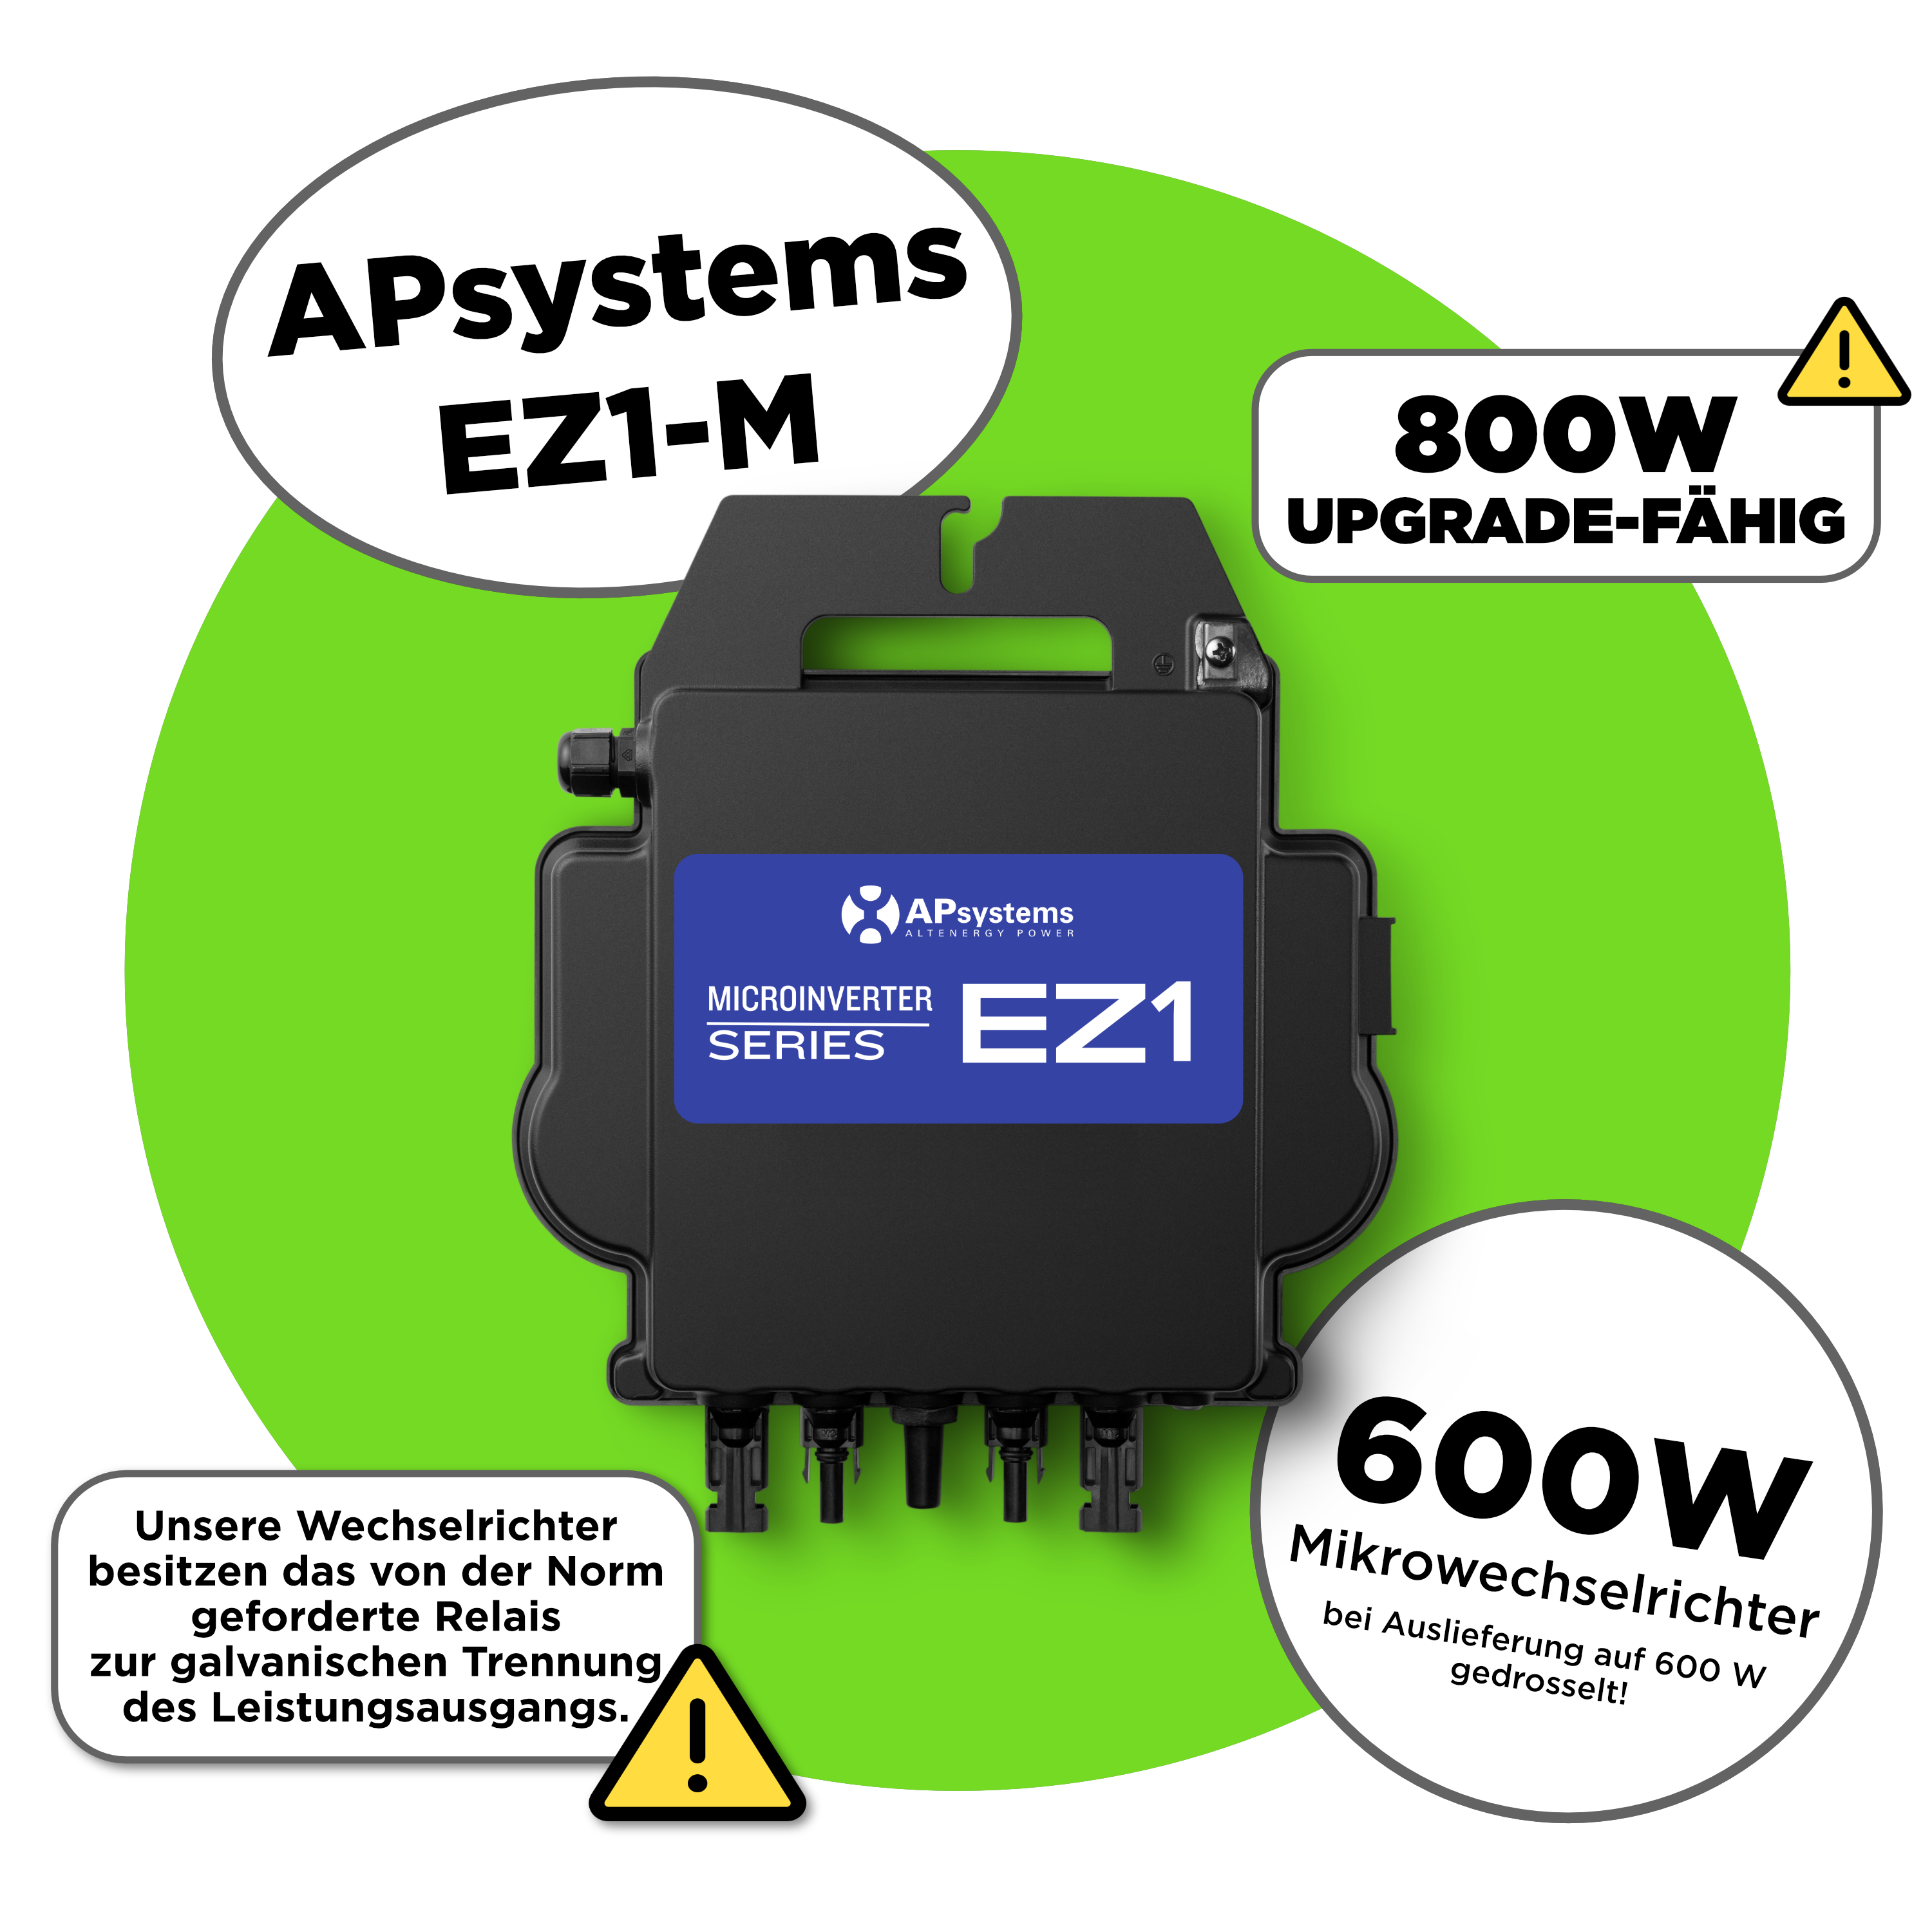 Ergofino Wechselrichter 800W APsystems EZ1-M